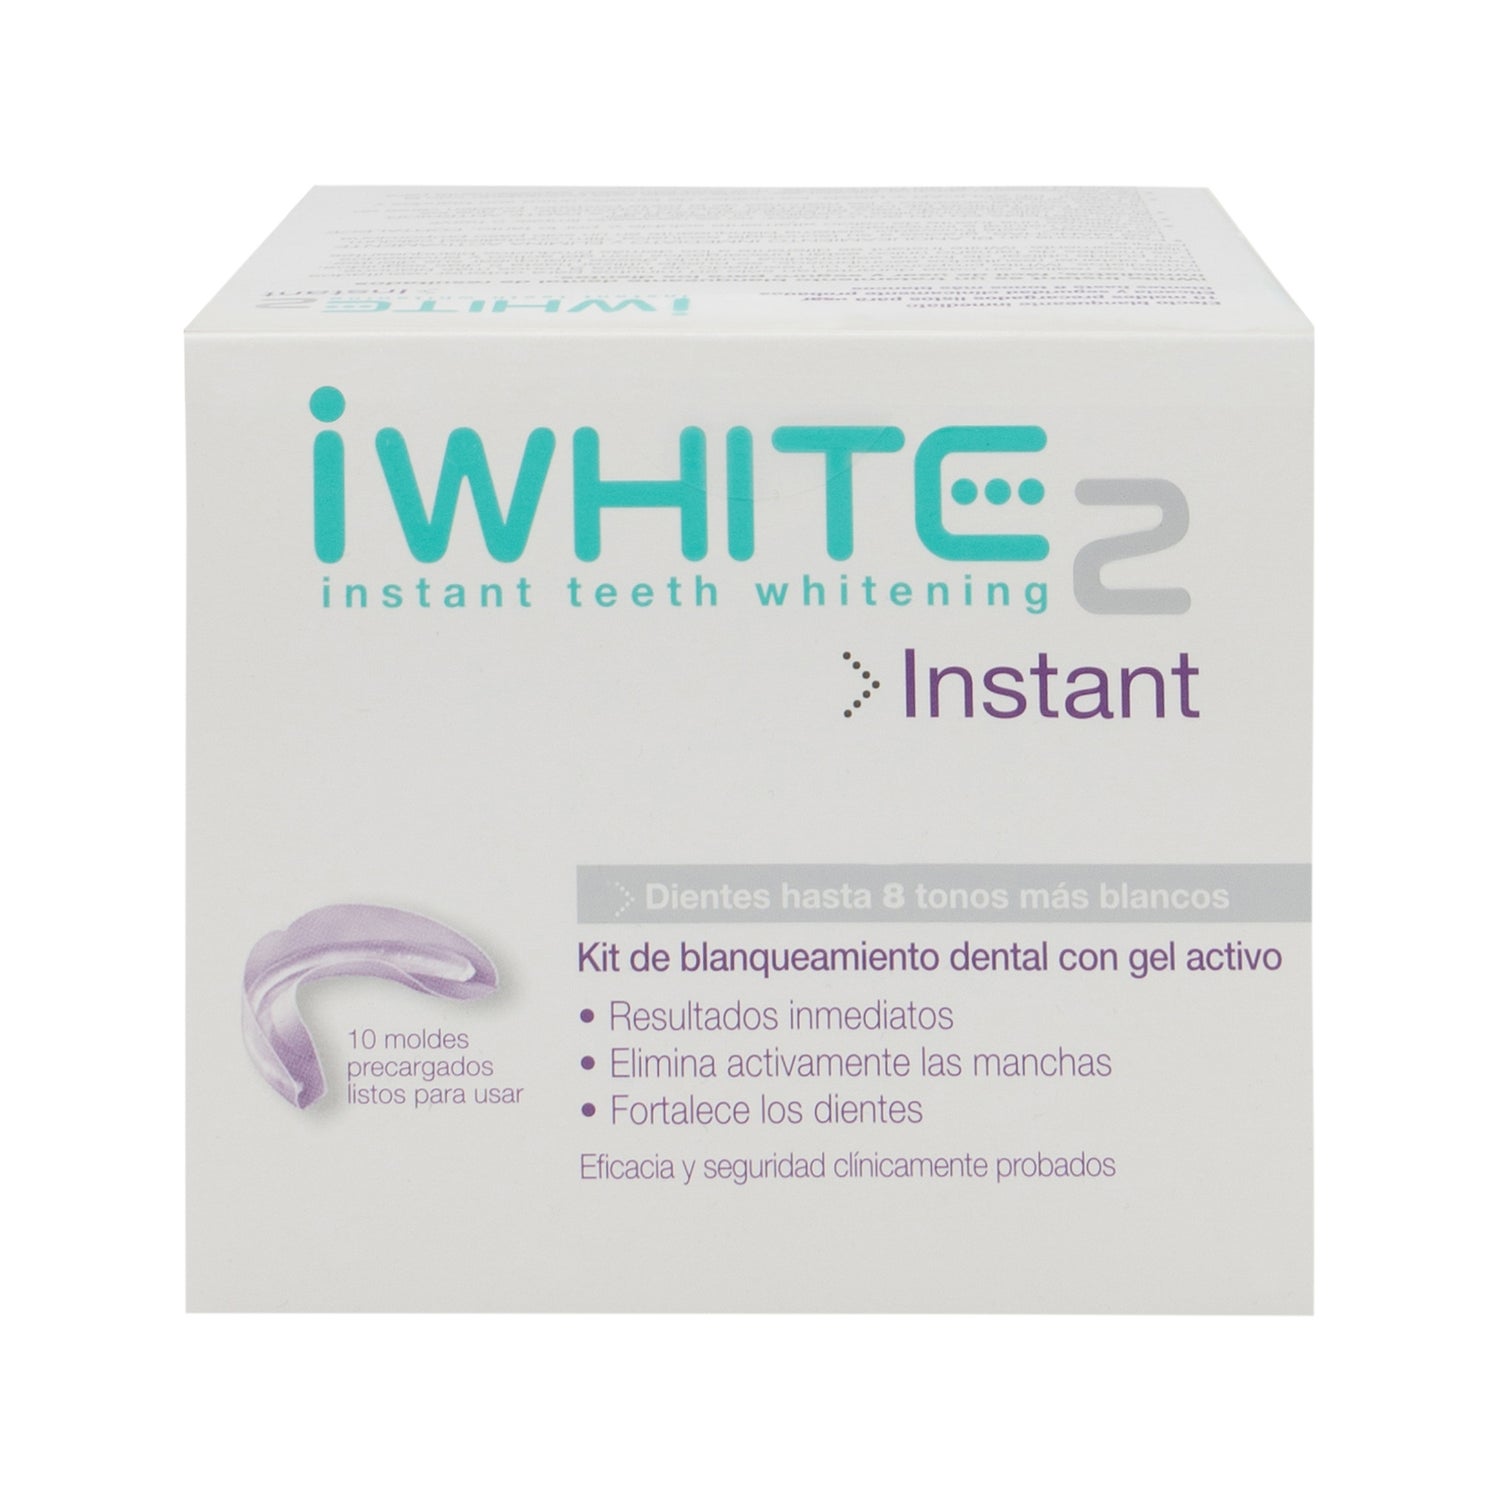 rustig aan Zwitsers Hol Iwhite 2 Instant teeth whitening kit 10 moulds | PromoFarma